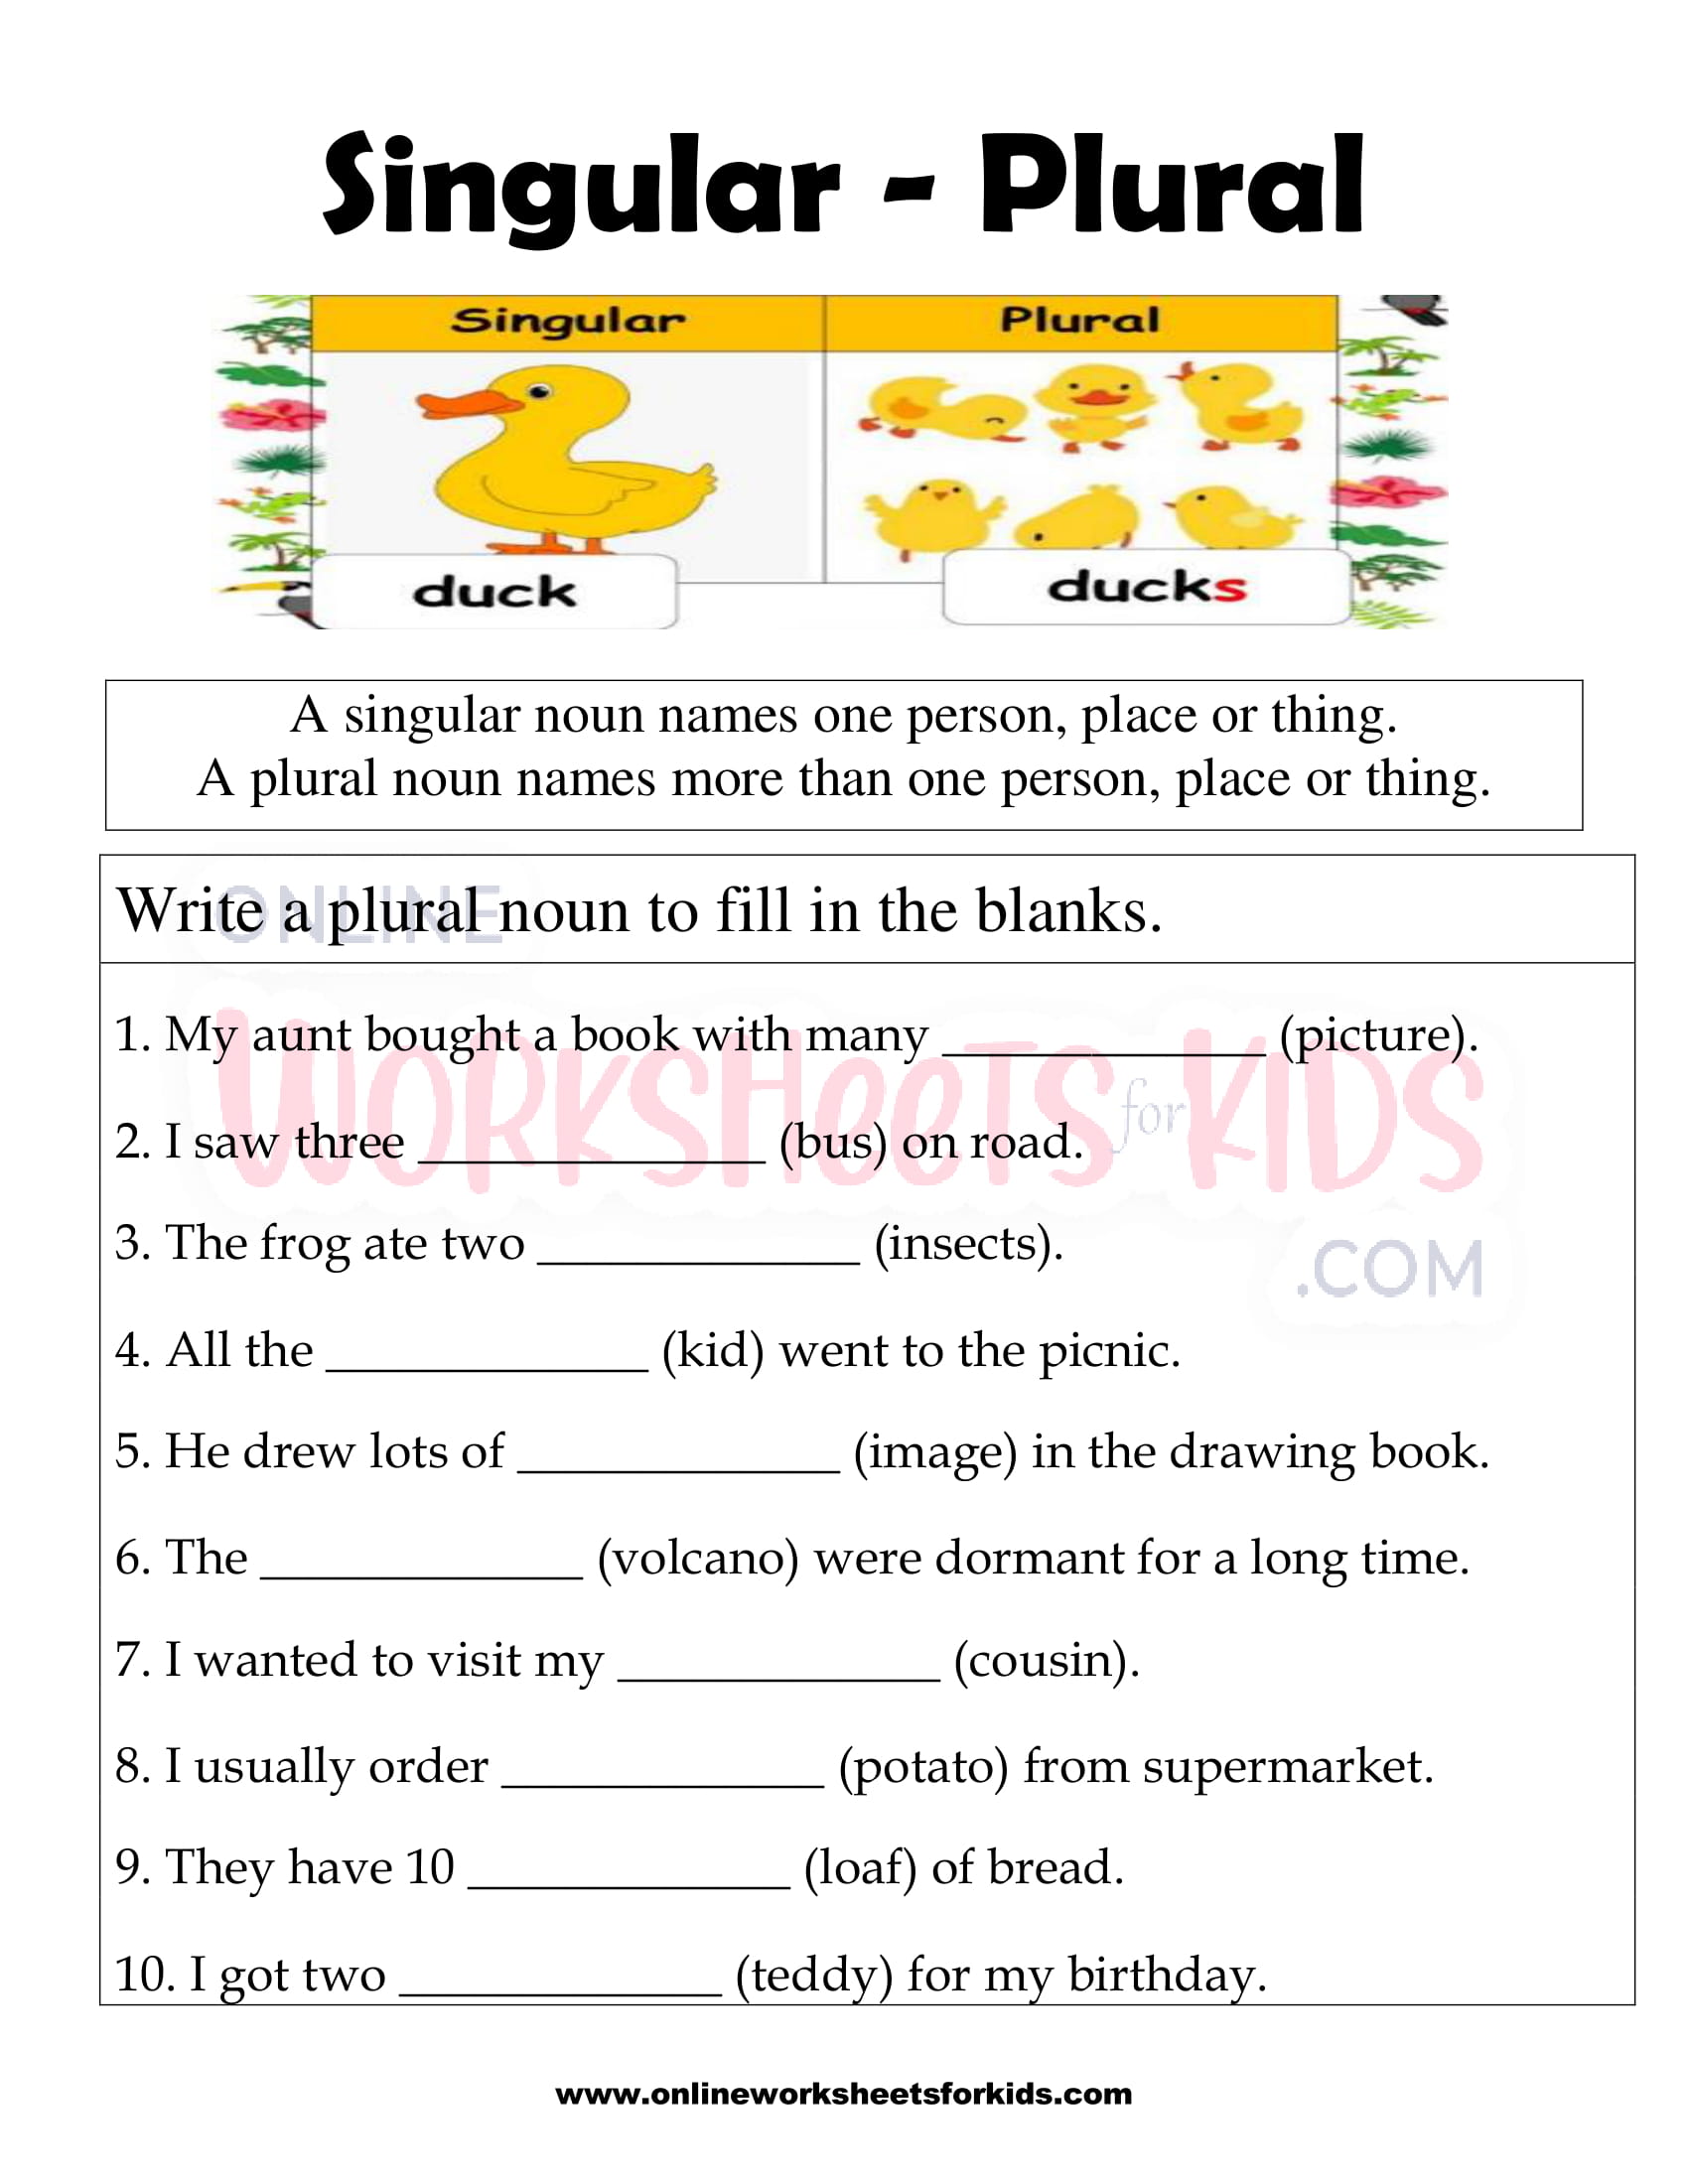 Singular Plural Worksheets For Grade 2 Pdf